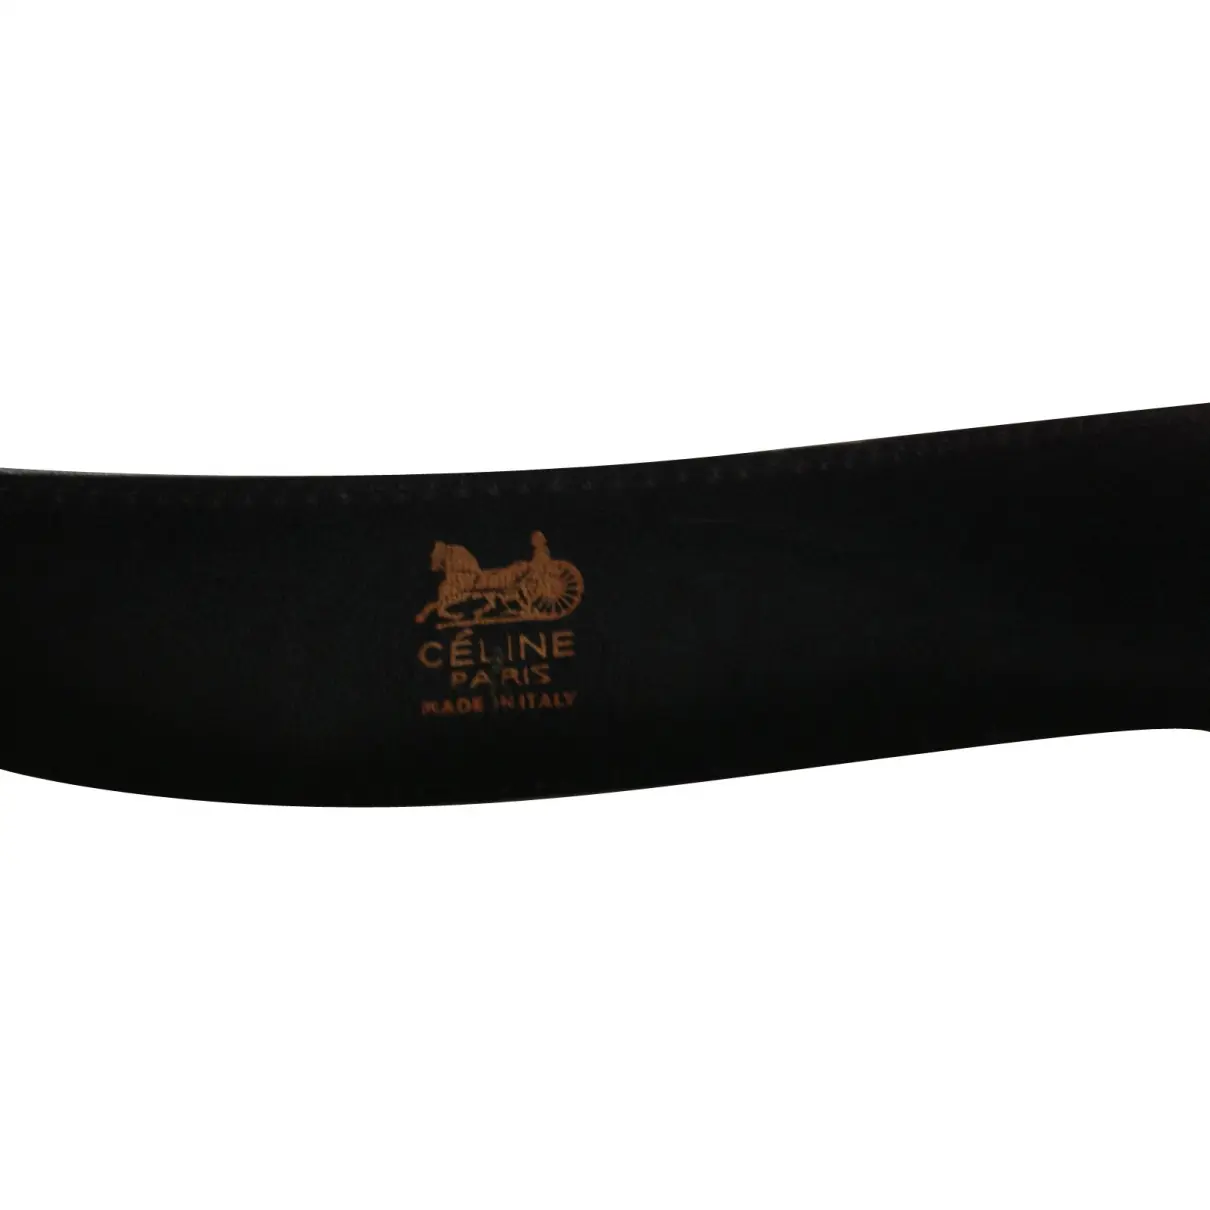 Buy Celine Black Patent leather Belt online - Vintage